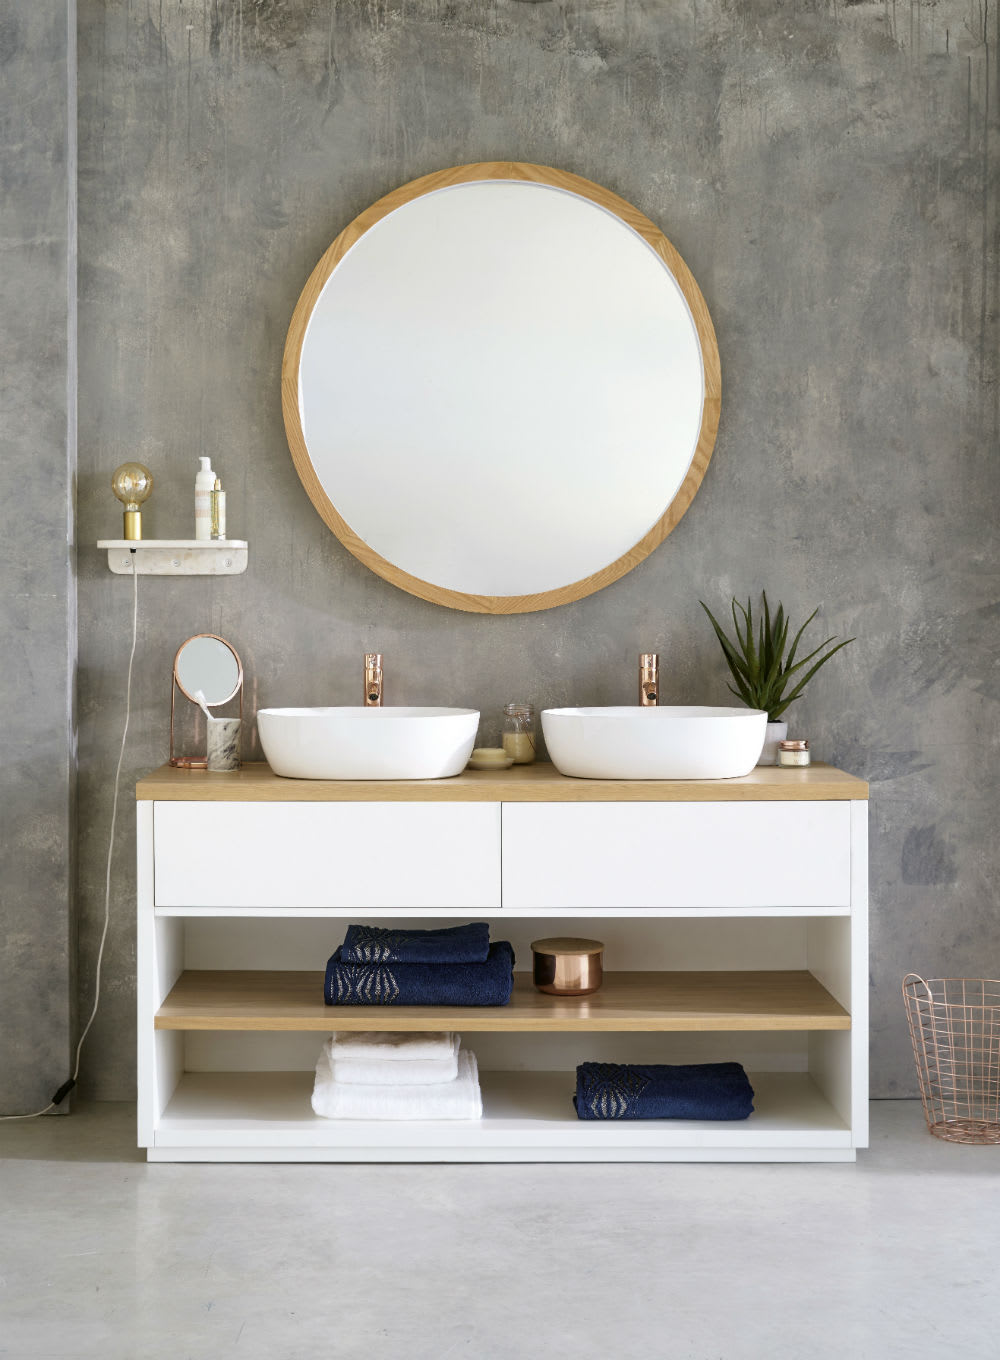 Miroir de salle de bains : comment le choisir, les meilleurs modèles